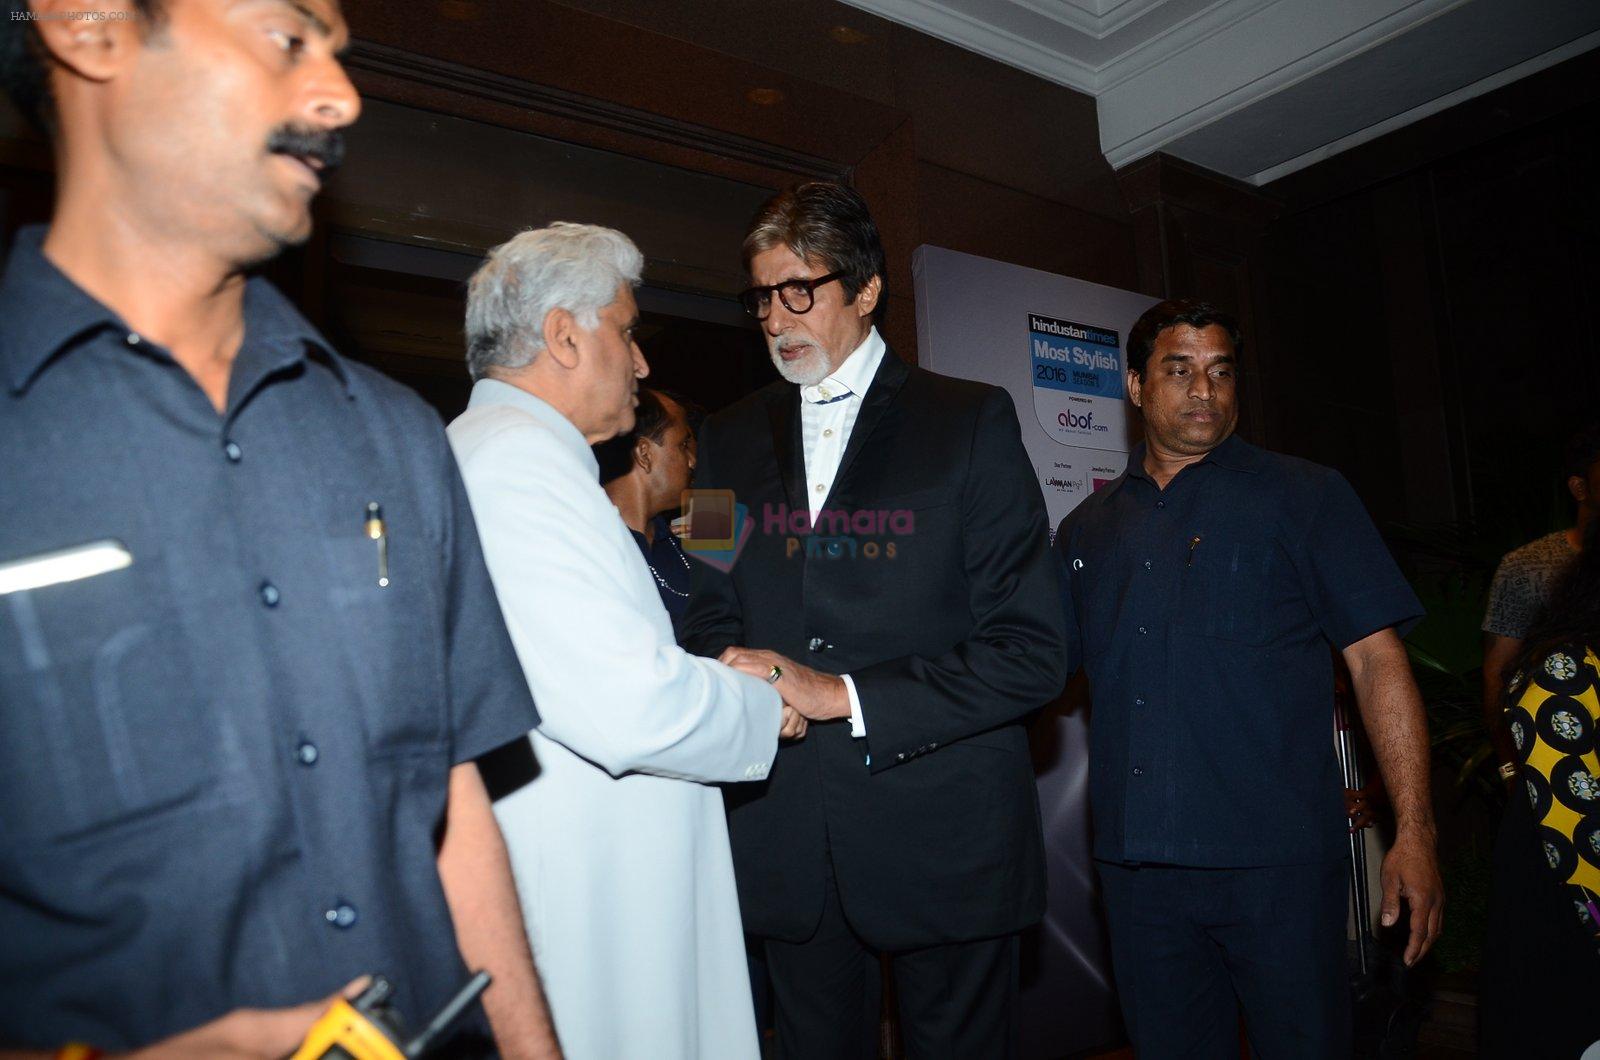 Amitabh Bachchan at HT Most Stylish on 20th March 2016